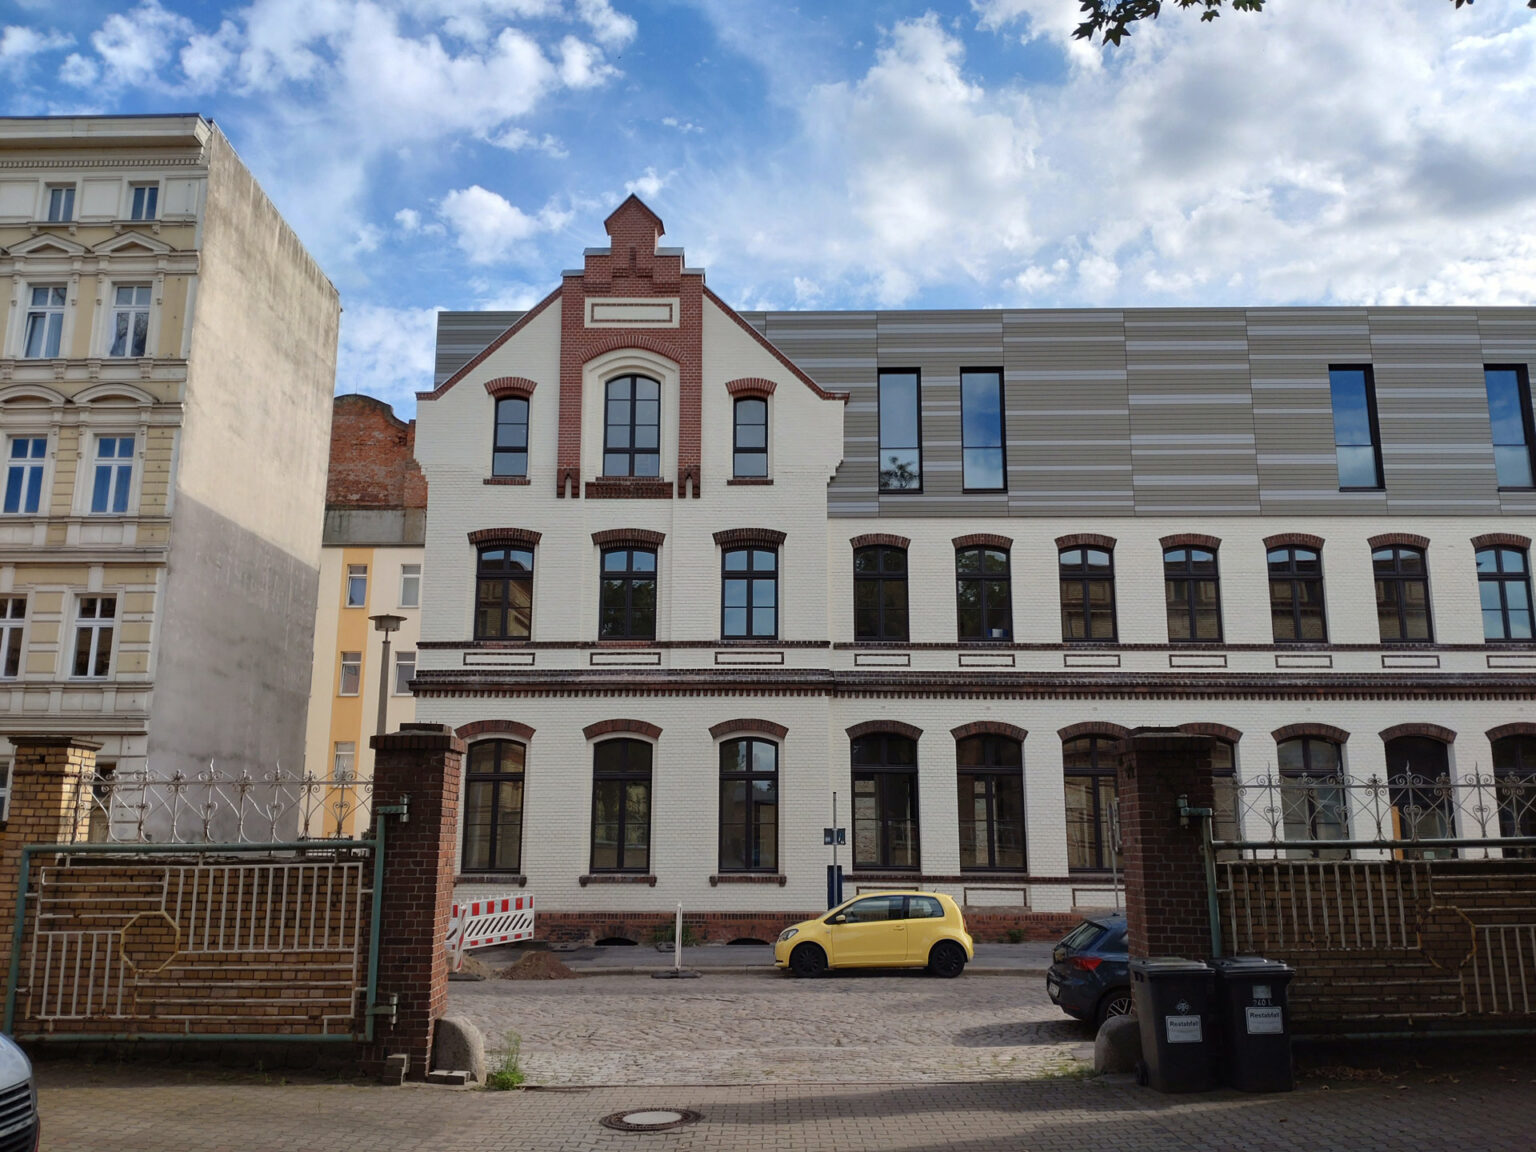 Wohn- und Geschäftshaus in historischem Ambiente in Magdeburg mit Metallfassade